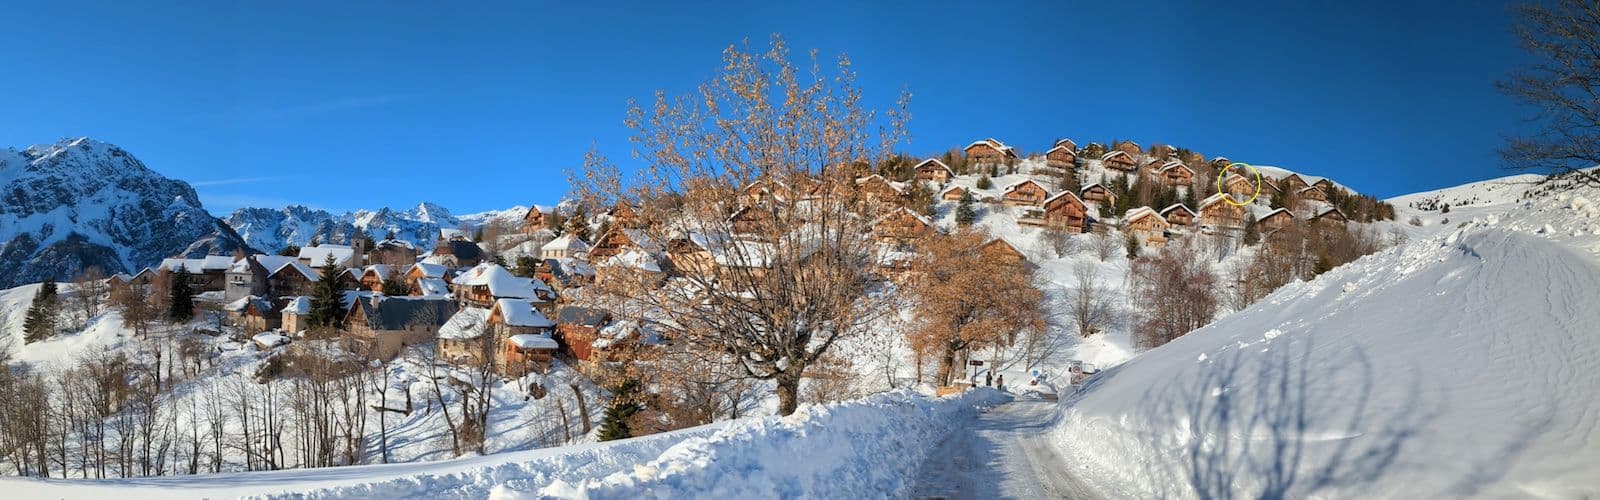 Le domaine skiable de l'Alpe d'Huez en hiver : bienvenue au chalet La Boutame !